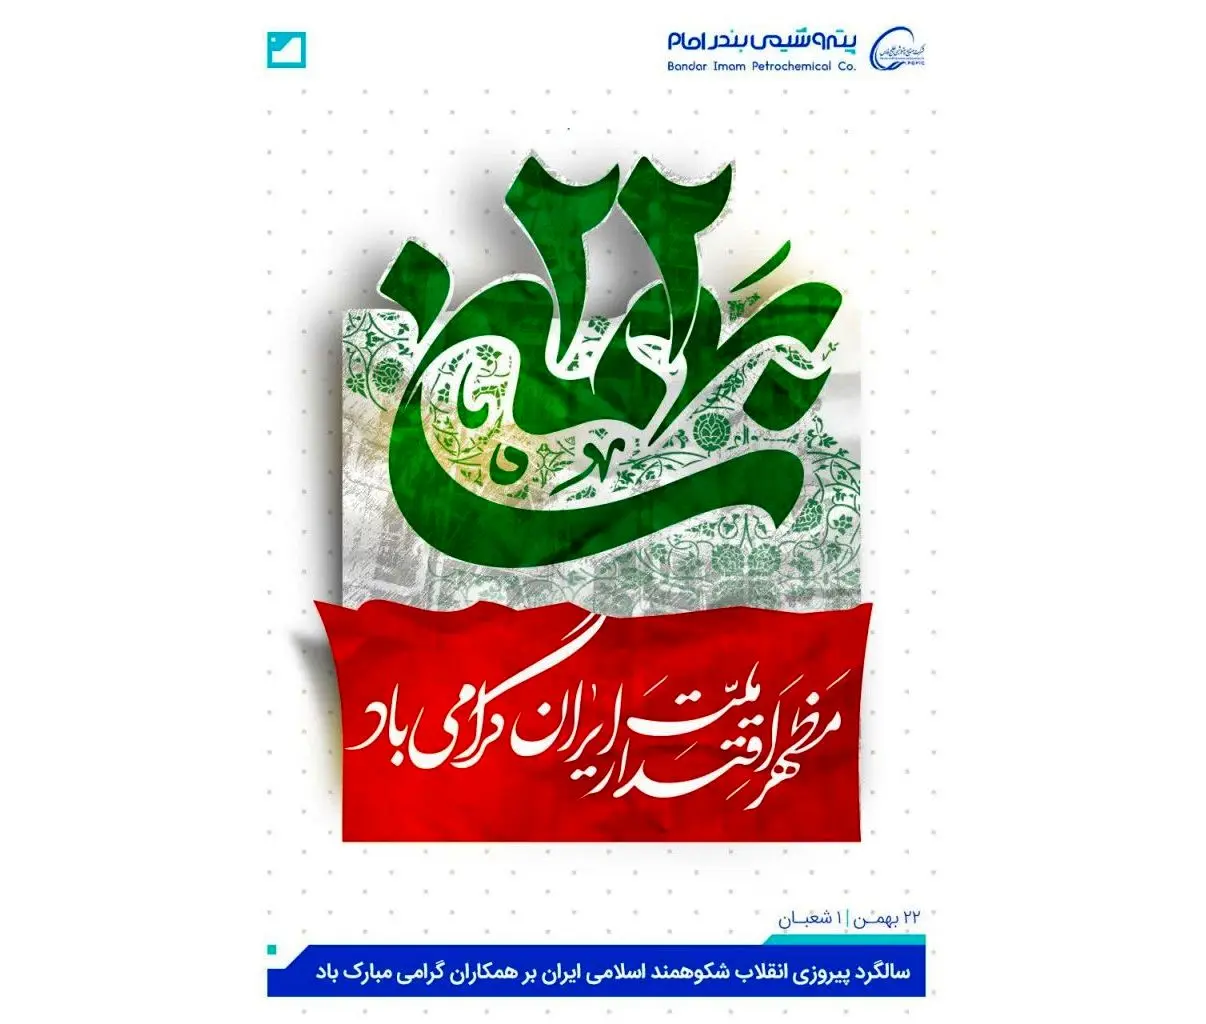 تبریک پتروشیمی بندرامام سالگرد پیروزی انقلاب شکوهمند اسلامی ایران